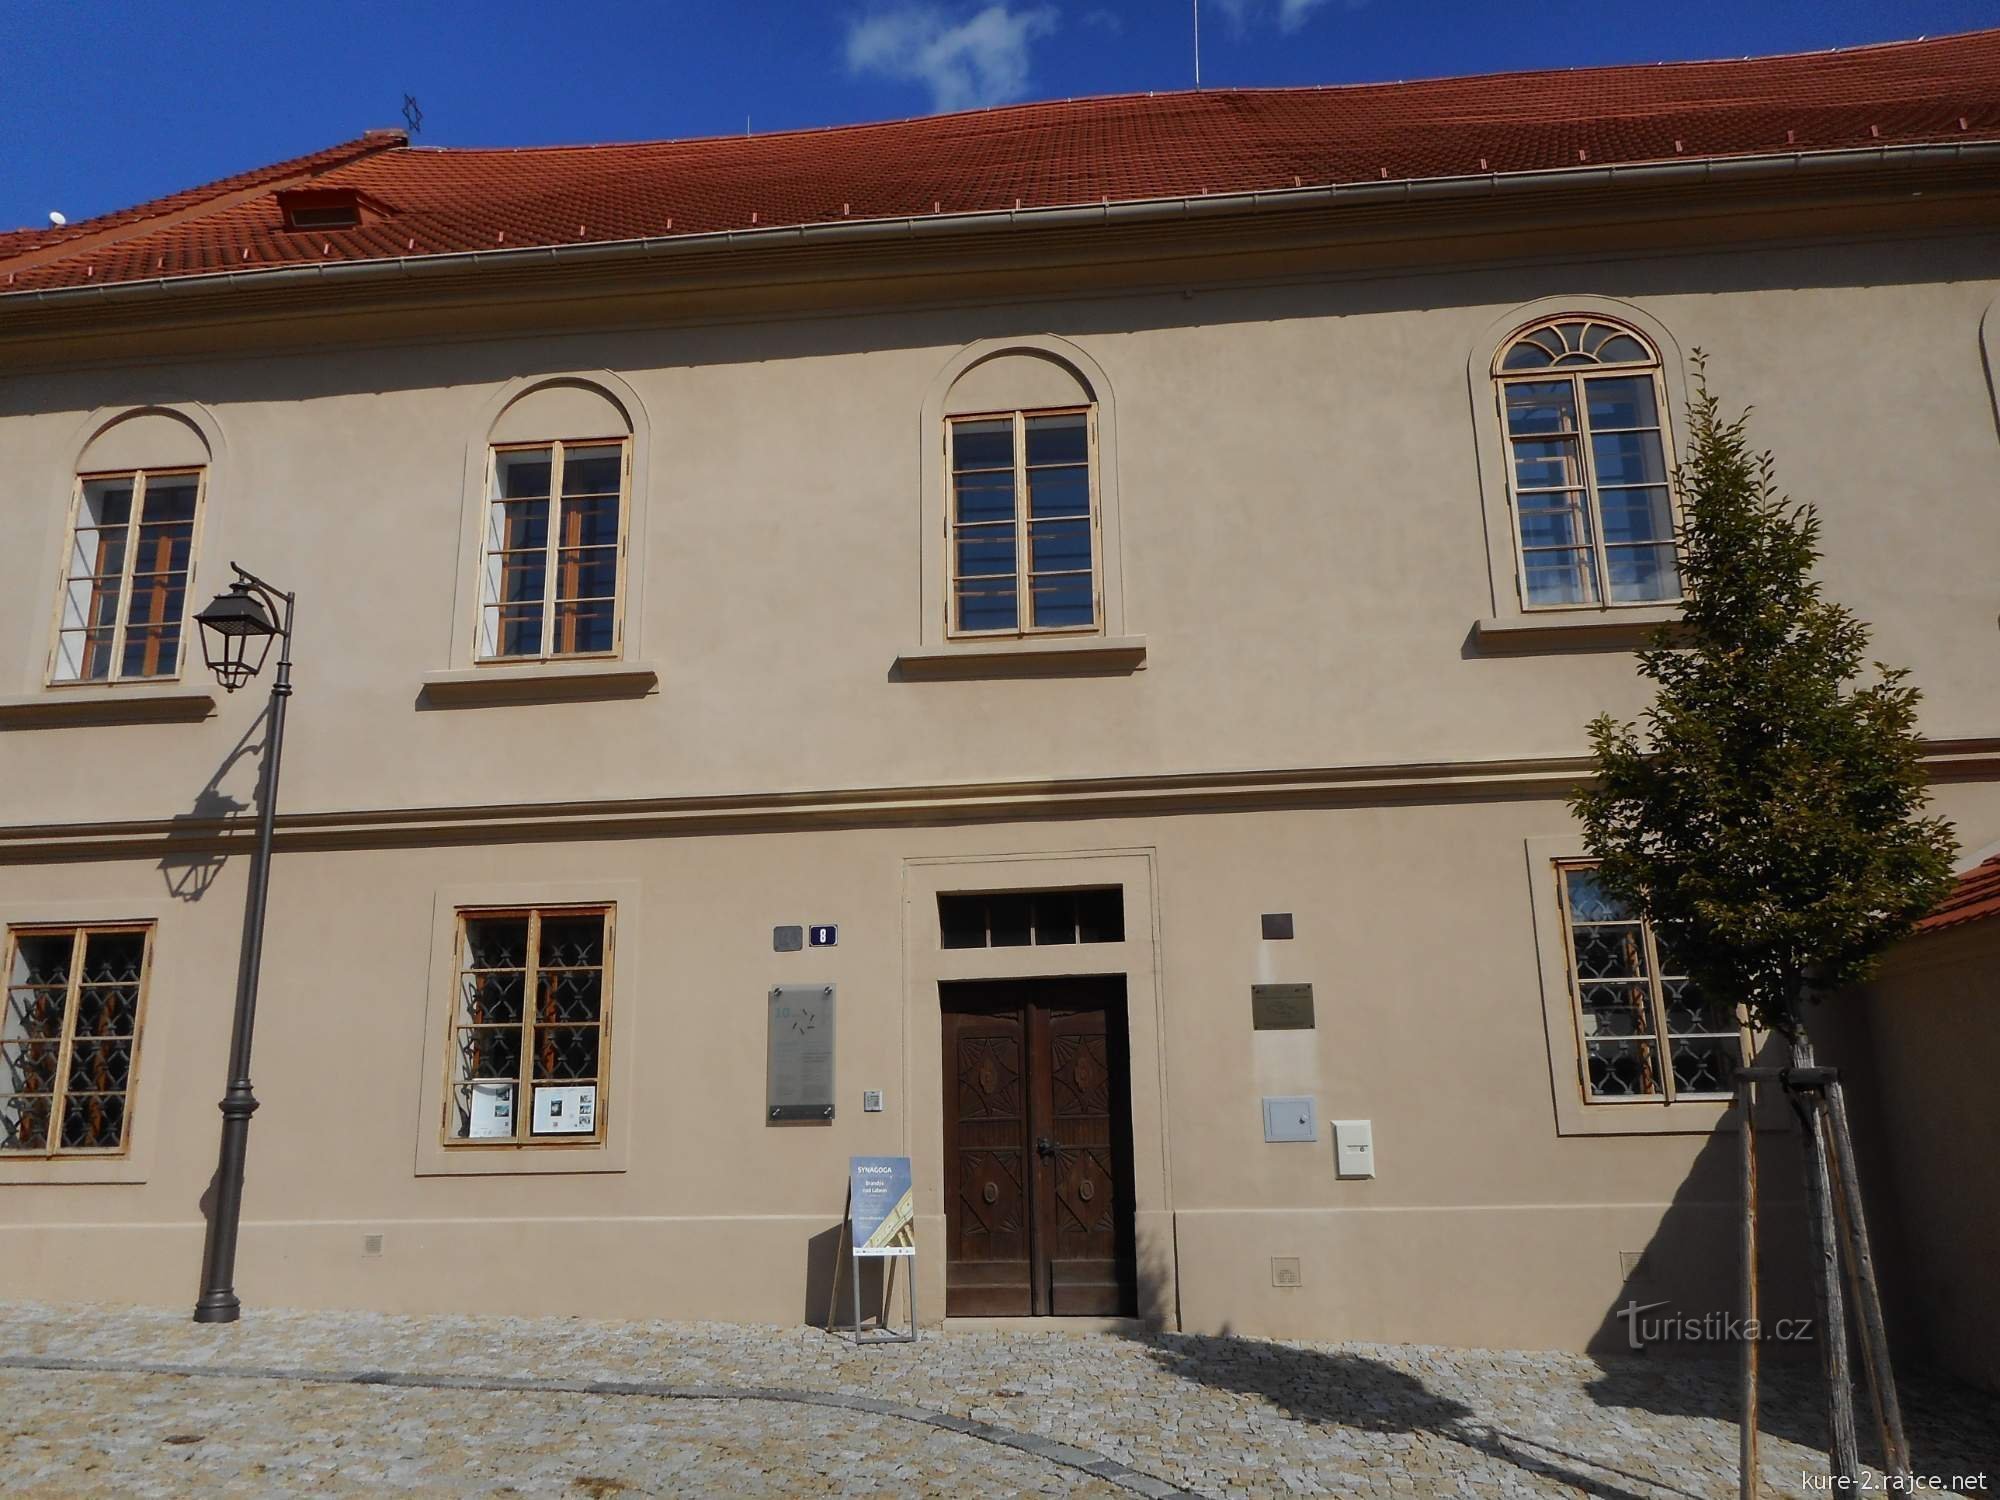 Dziś synagoga służy jako muzeum żydowskie